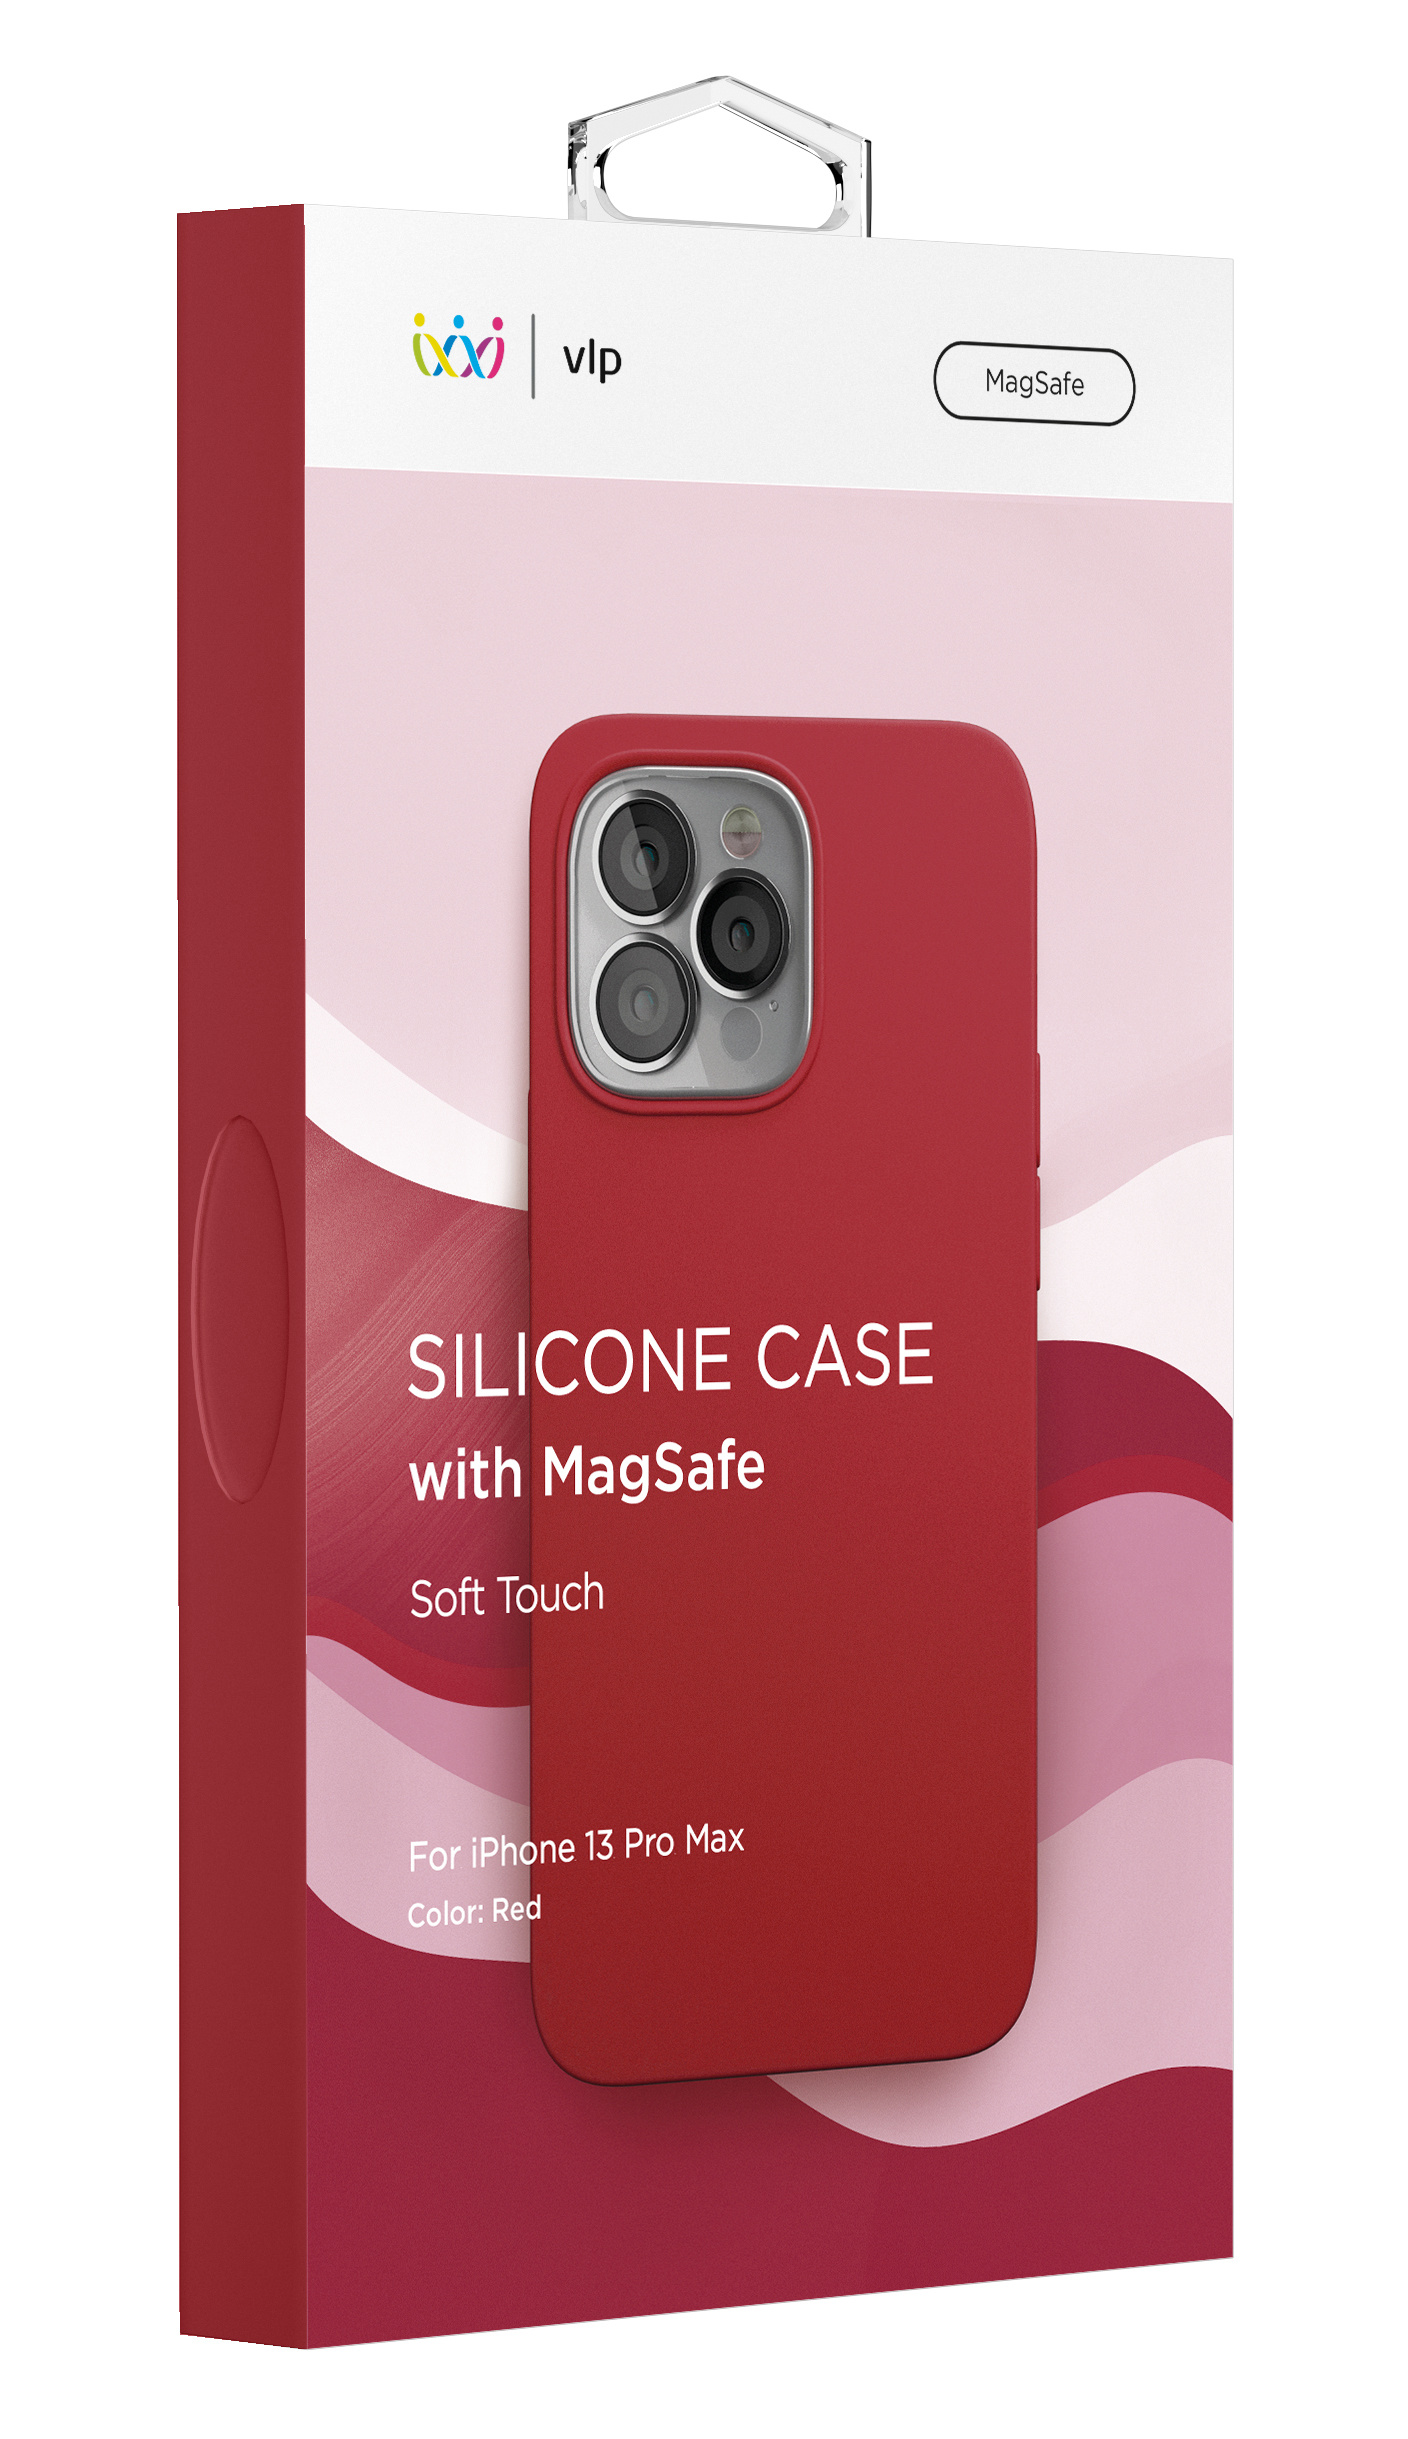 Фото — Чехол защитный vlp Silicone case with MagSafe для iPhone 13 Pro Max, красный